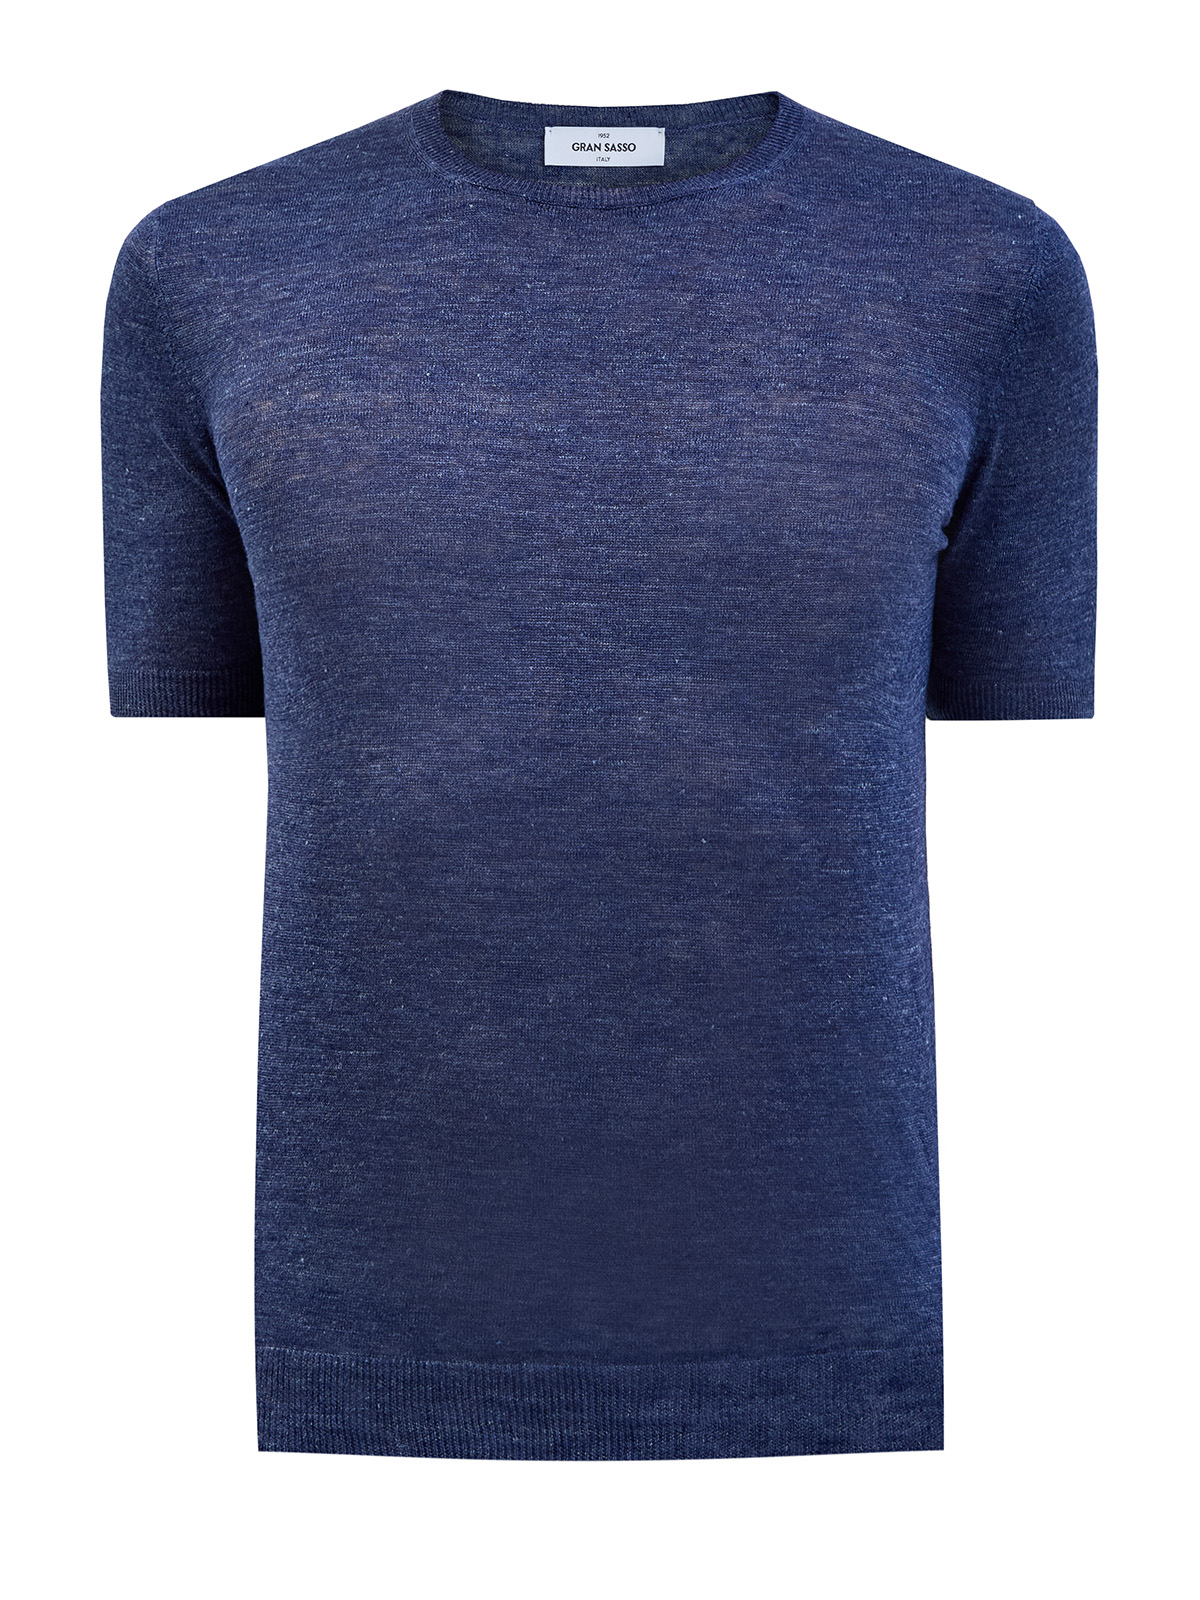 Льняной джемпер с короткими рукавами и эластичной отделкой кромок GRAN SASSO, цвет синий, размер 48;50;52;56;60